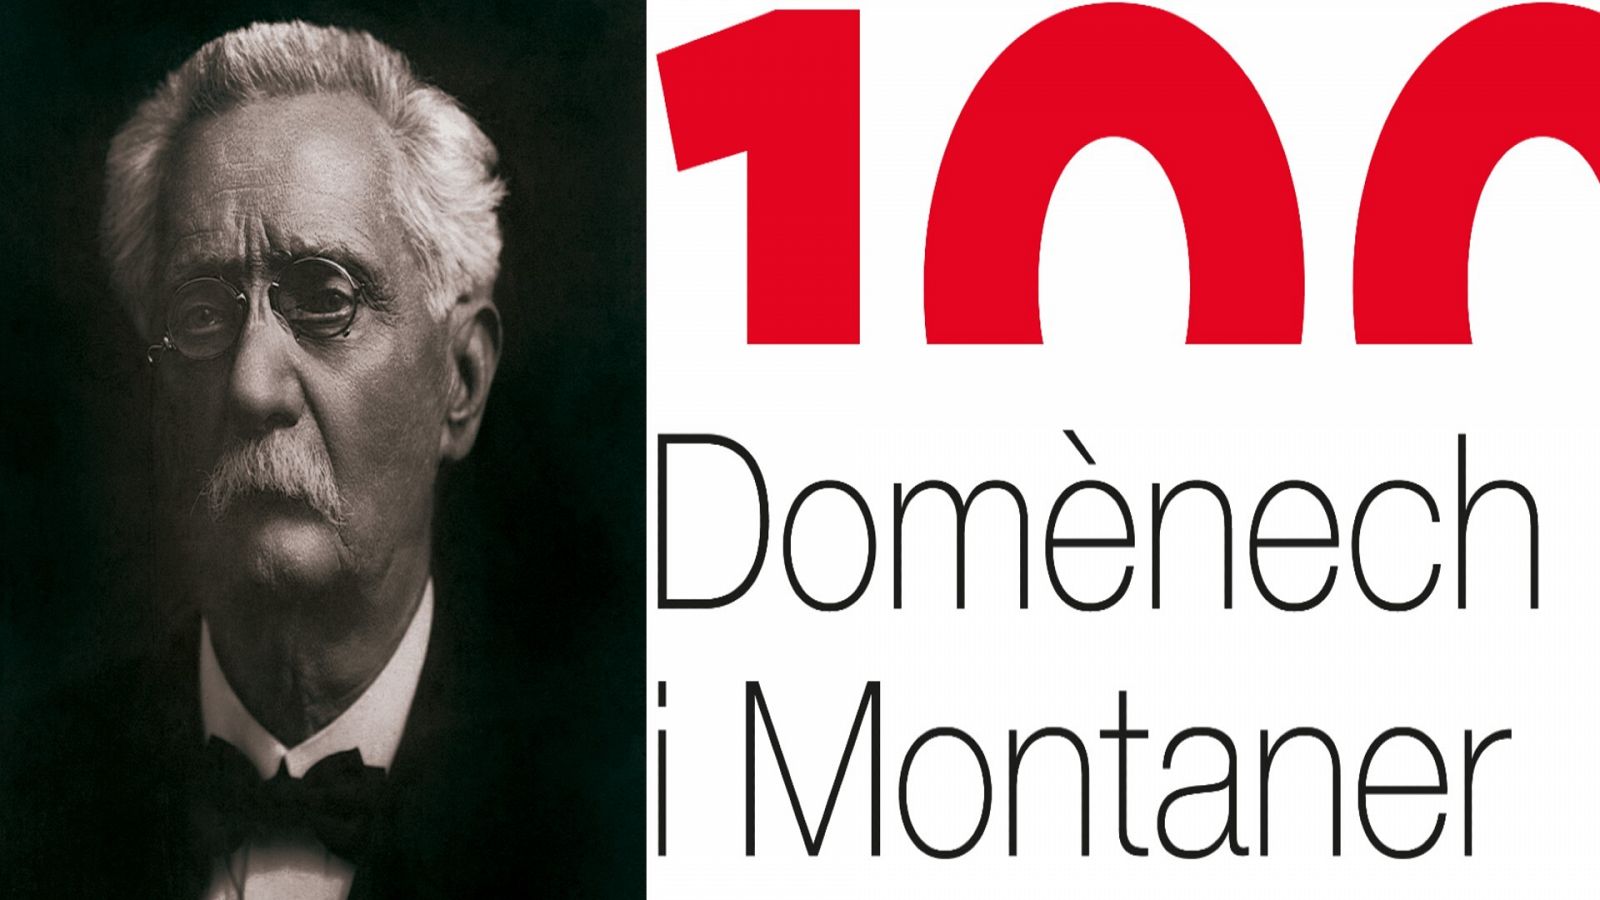 Enguany es commemora el centenari Domènech i Montaner, ja que l'arquitecte va morir el 27 de desembre de l'any 1923